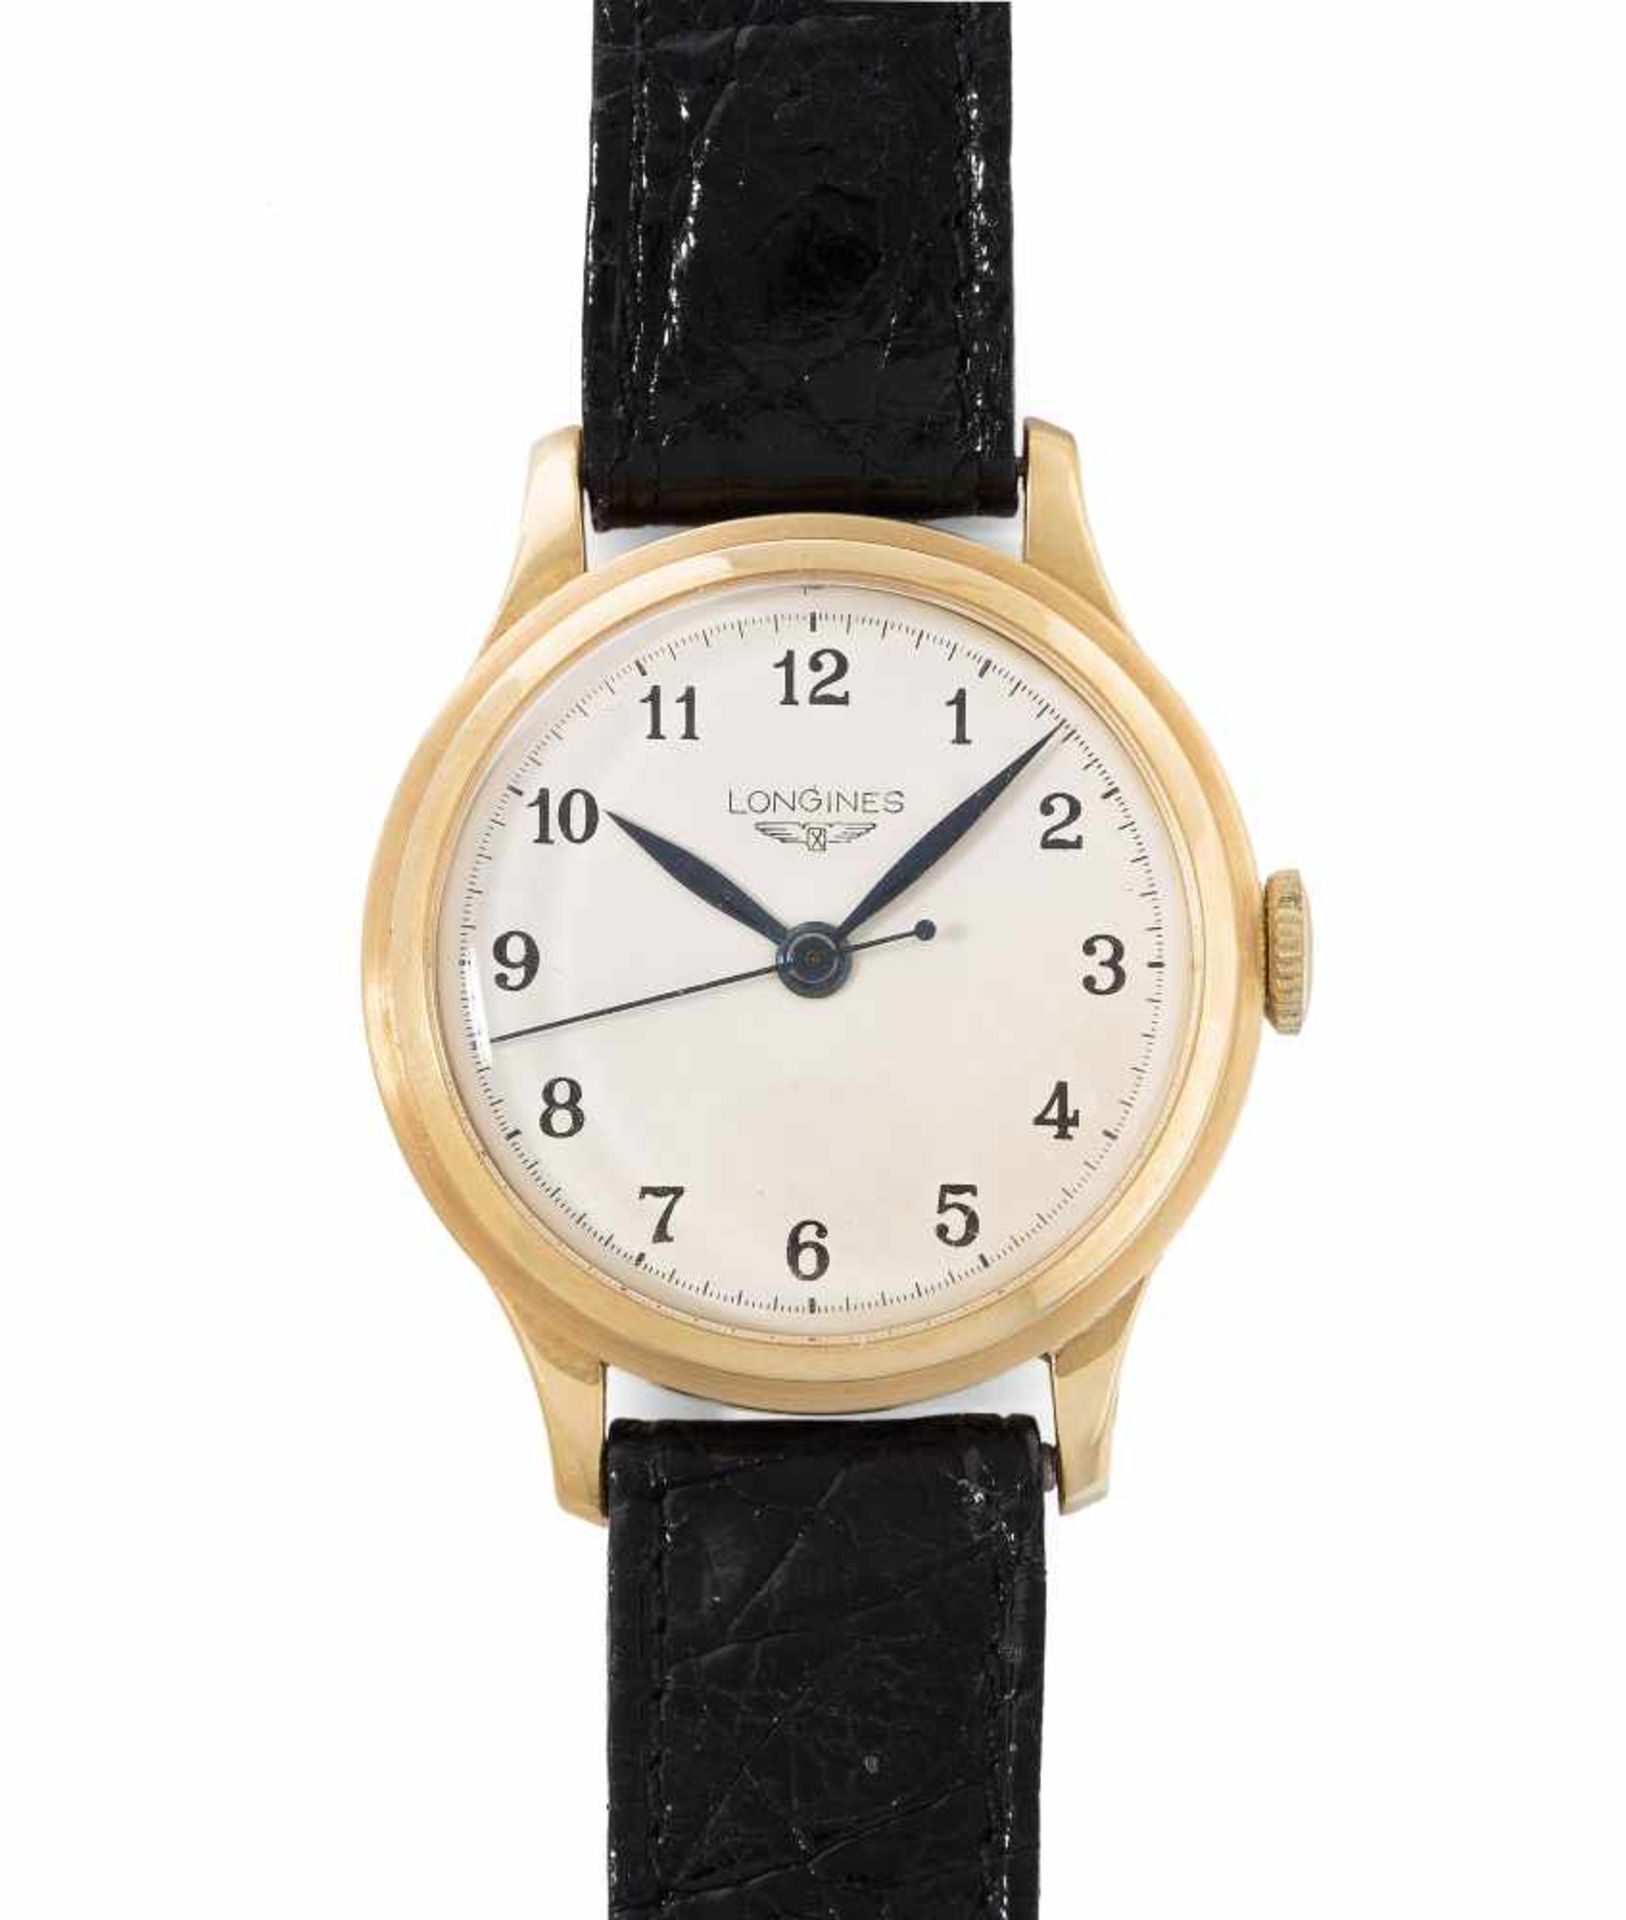 LonginesRunde, automatische Armbanduhr um 1940 in 750 Gelbgoldgehäuse ca. 15 g. Boden gedrückt,